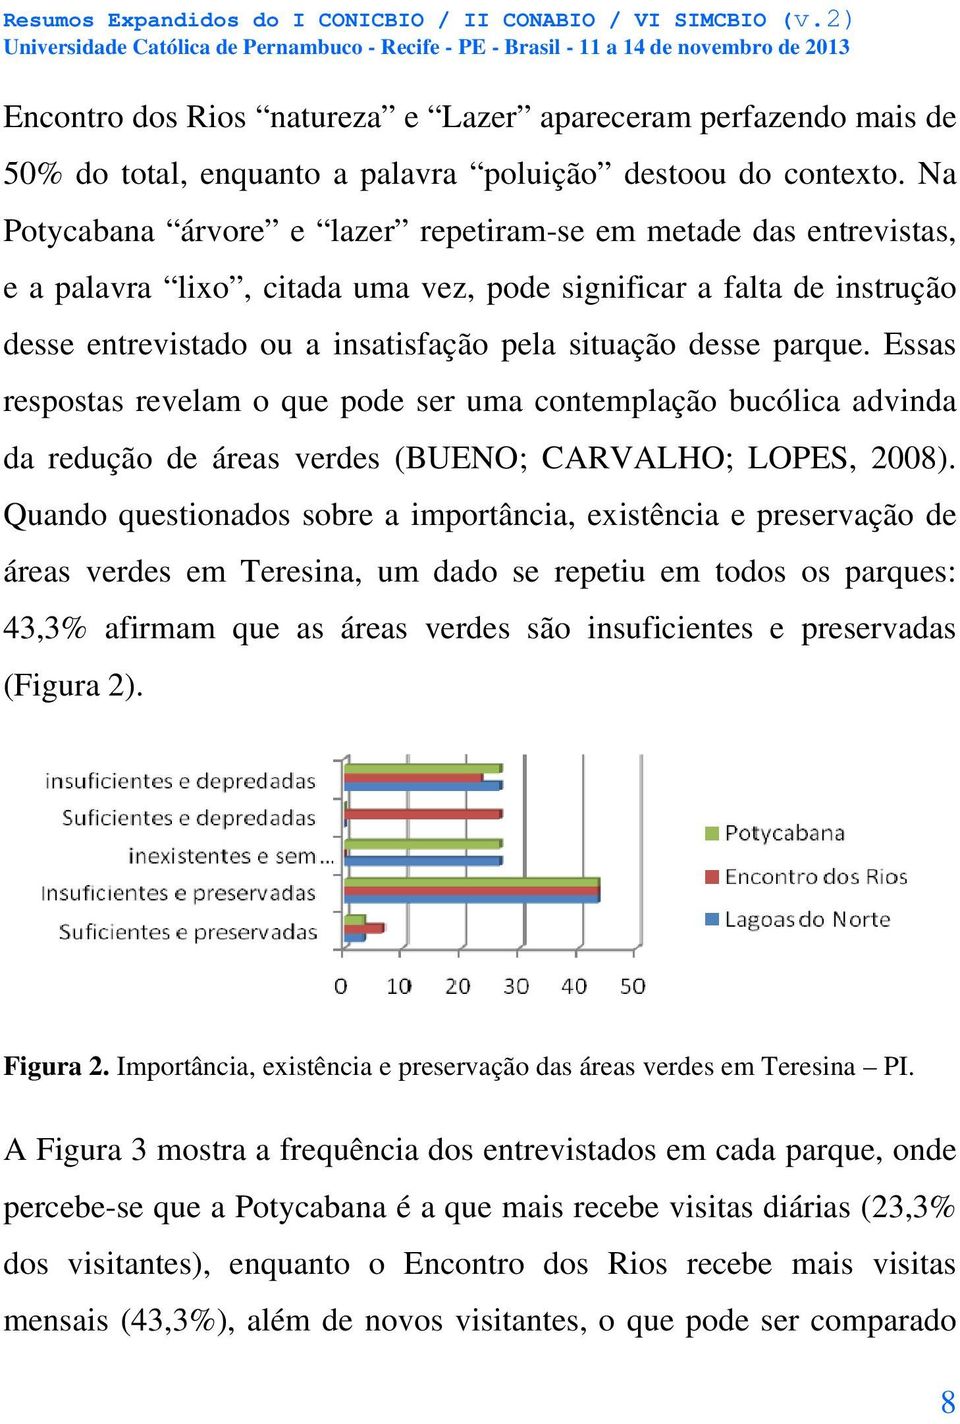 parque. Essas respostas revelam o que pode ser uma contemplação bucólica advinda da redução de áreas verdes (BUENO; CARVALHO; LOPES, 2008).